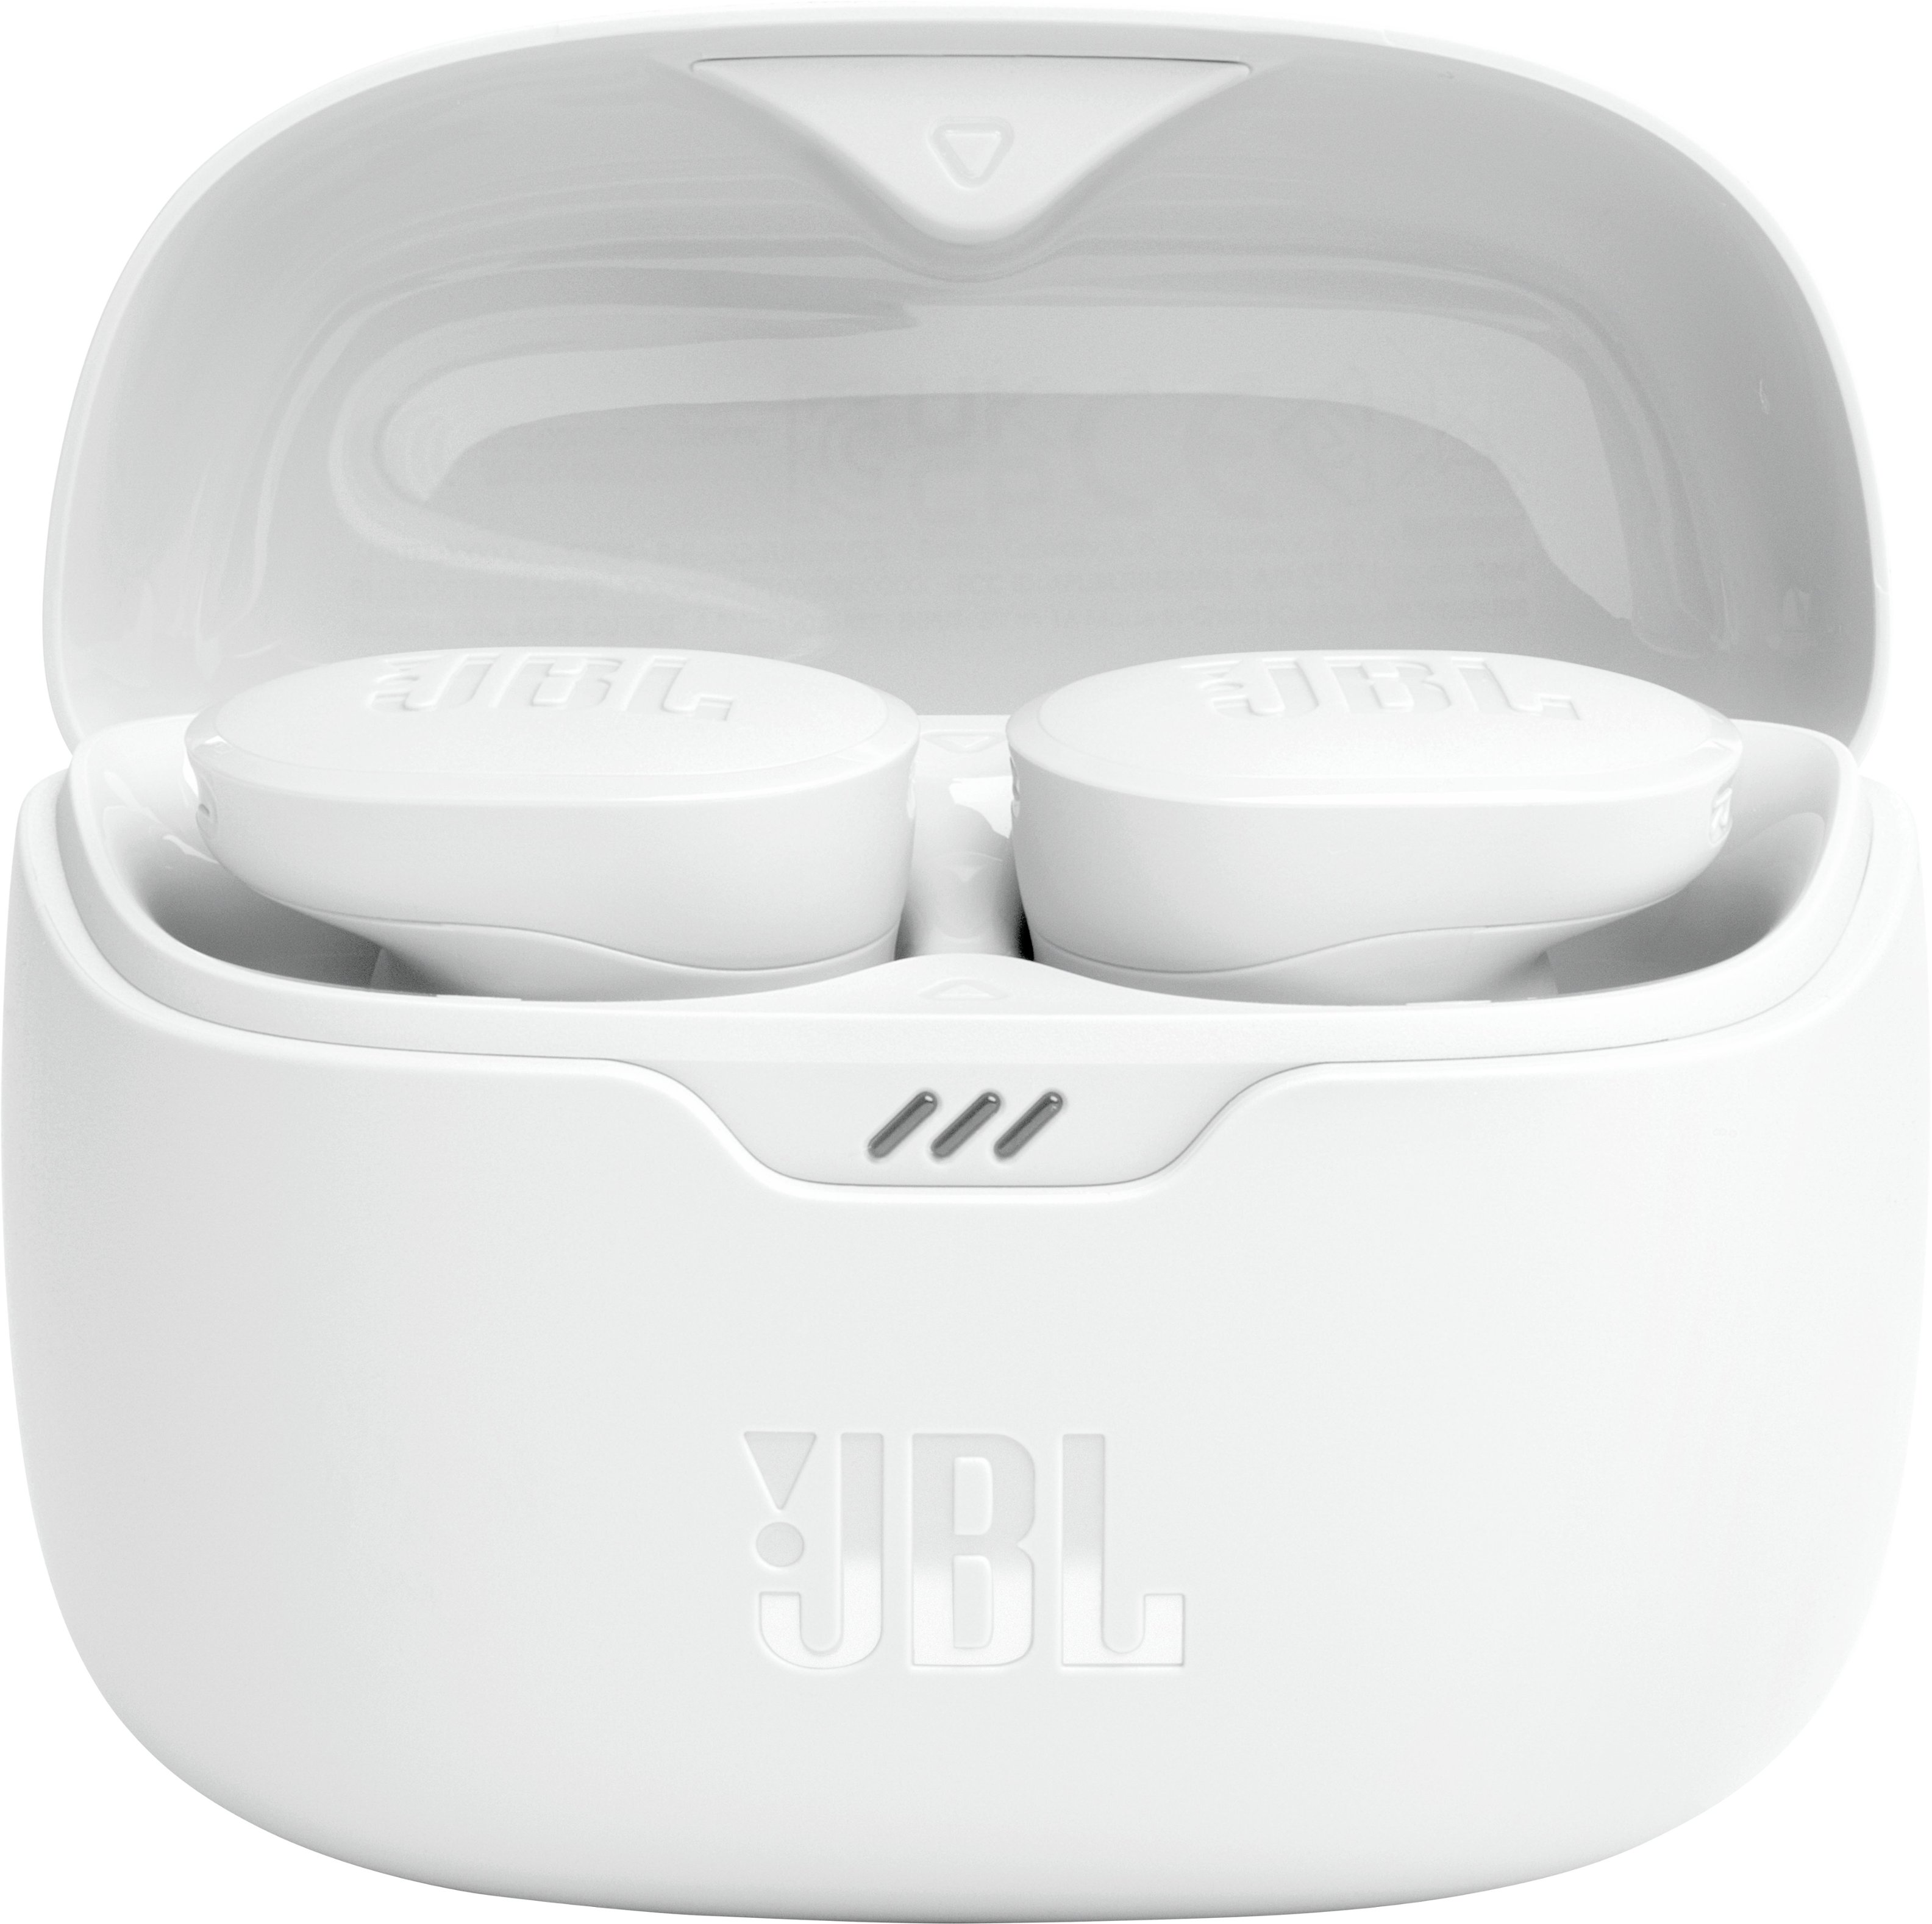 JBL Tune Buds True Wireless Noise Cancelling Earbuds White JBLTBUDSWHTAM -  Best Buy